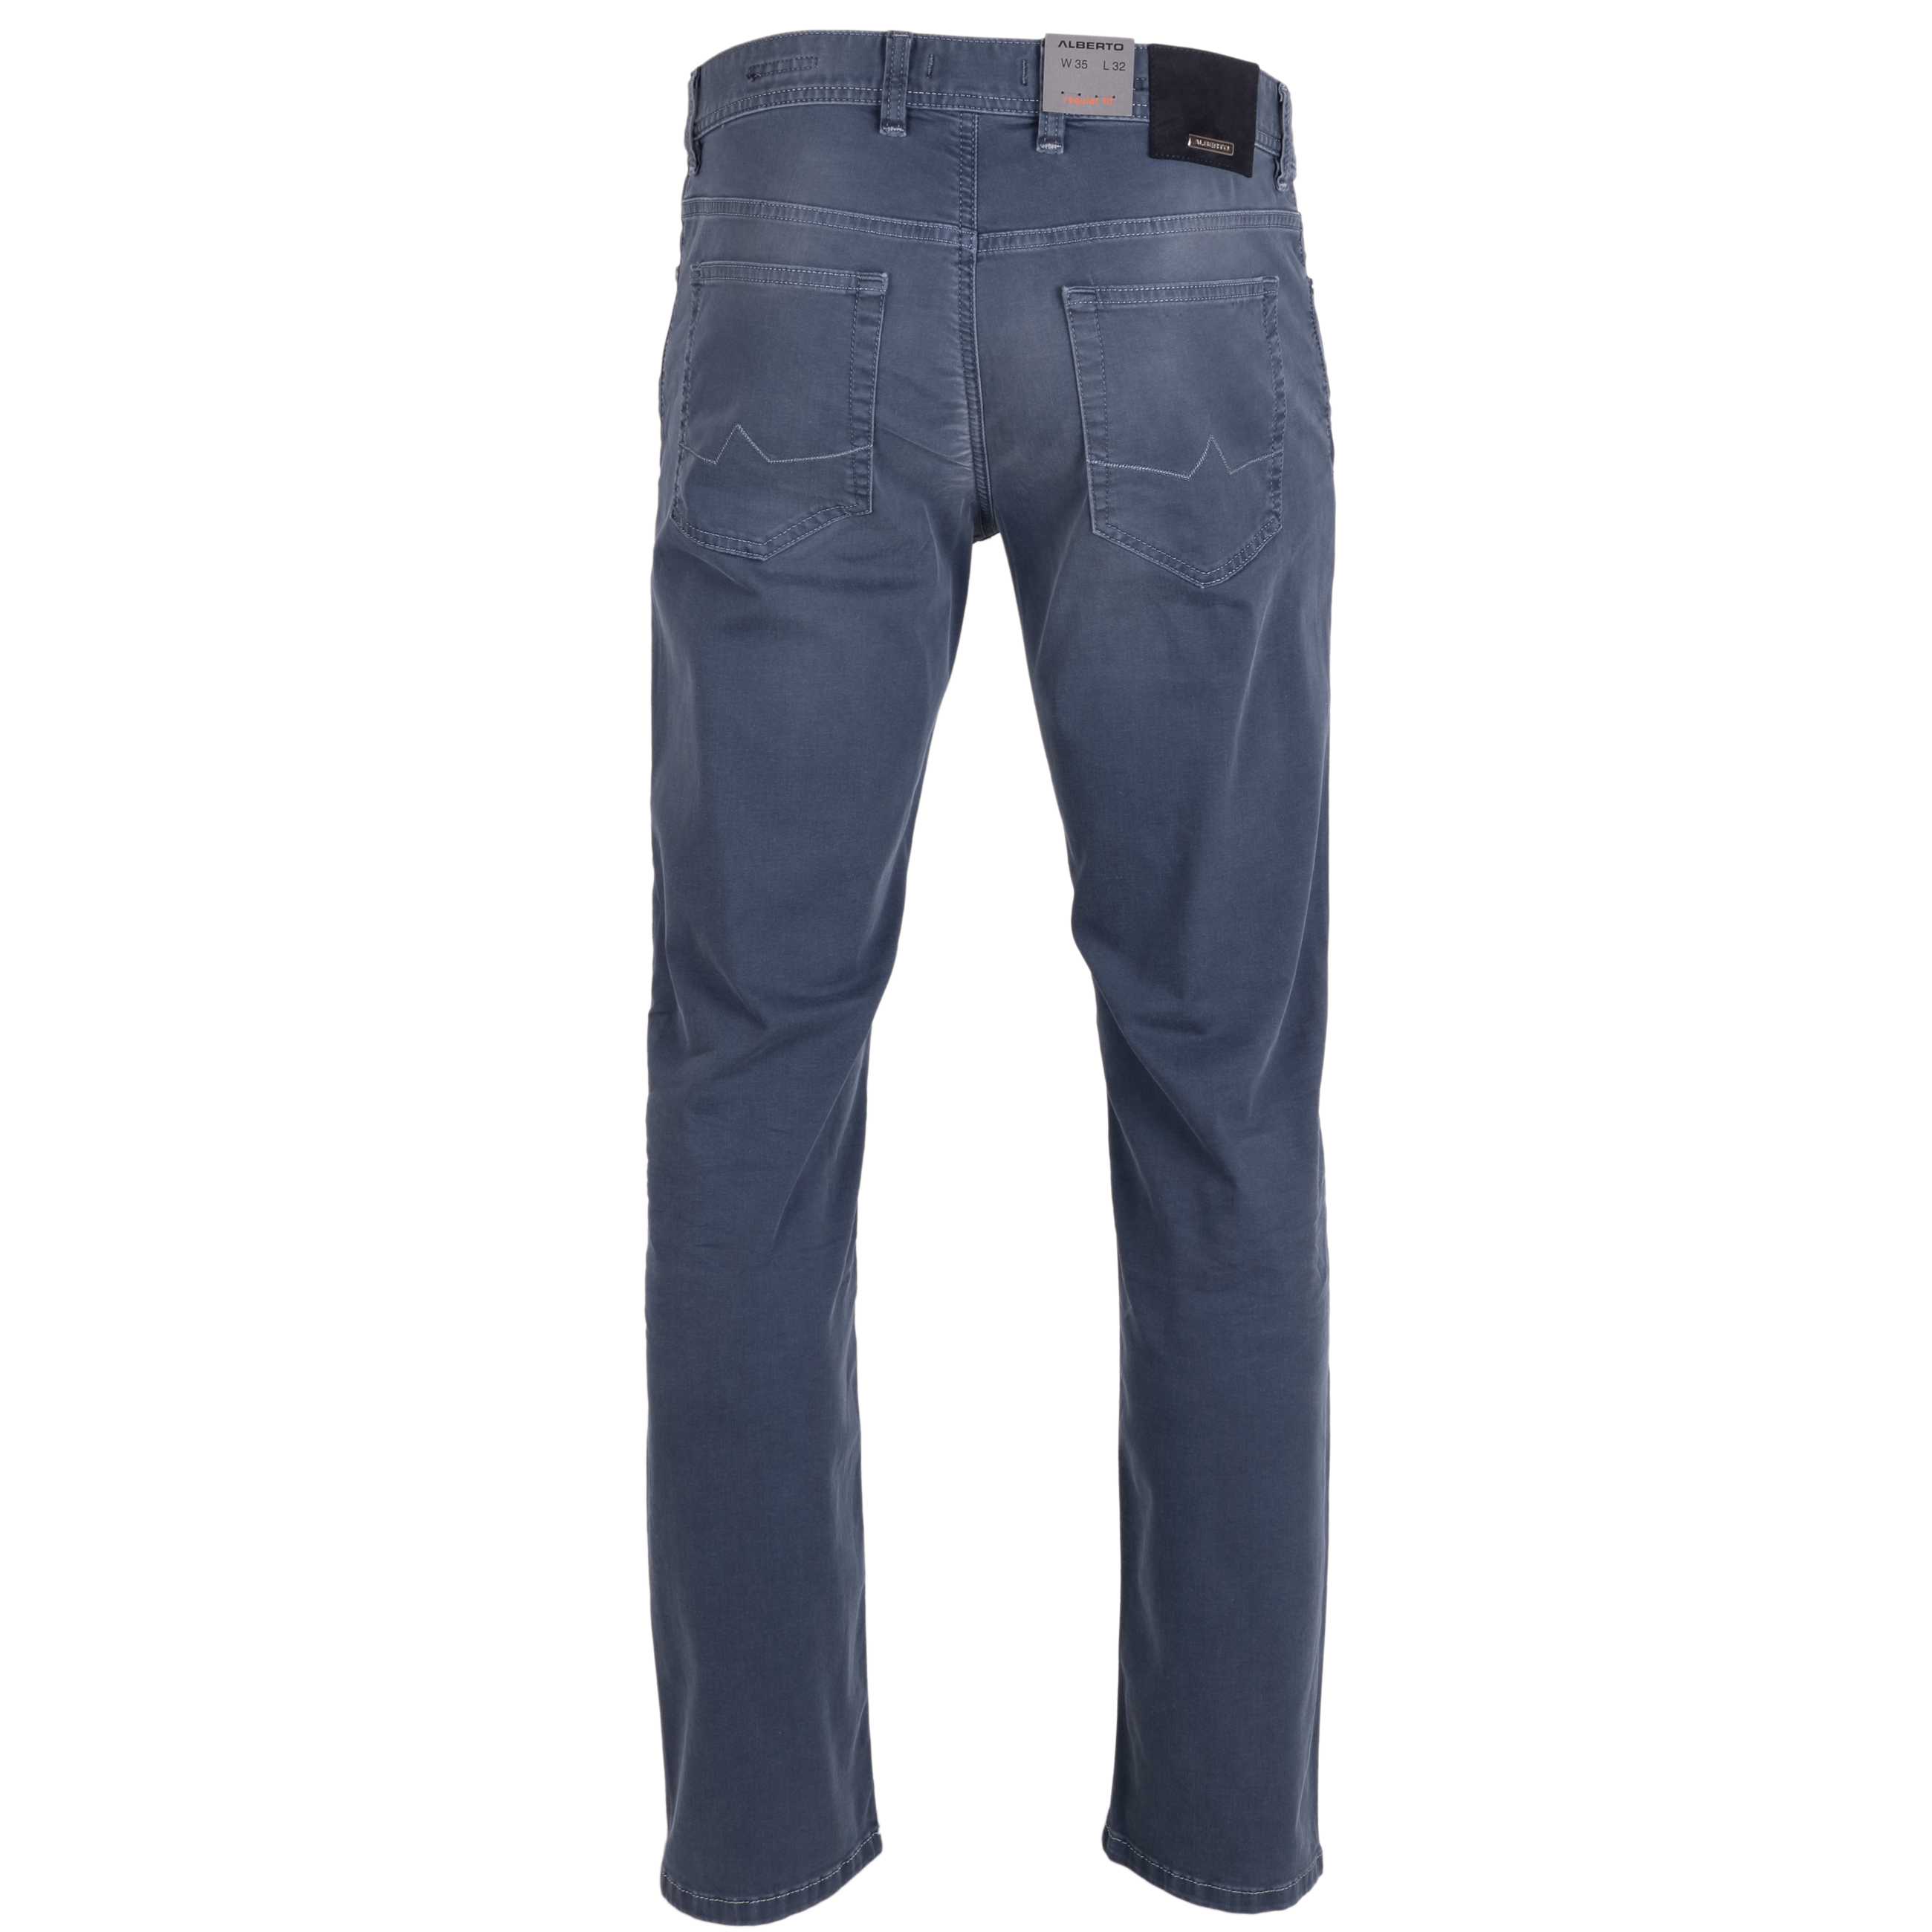 Alberto Jeans Pipe regular fit leichte Qualität 36/32 grau